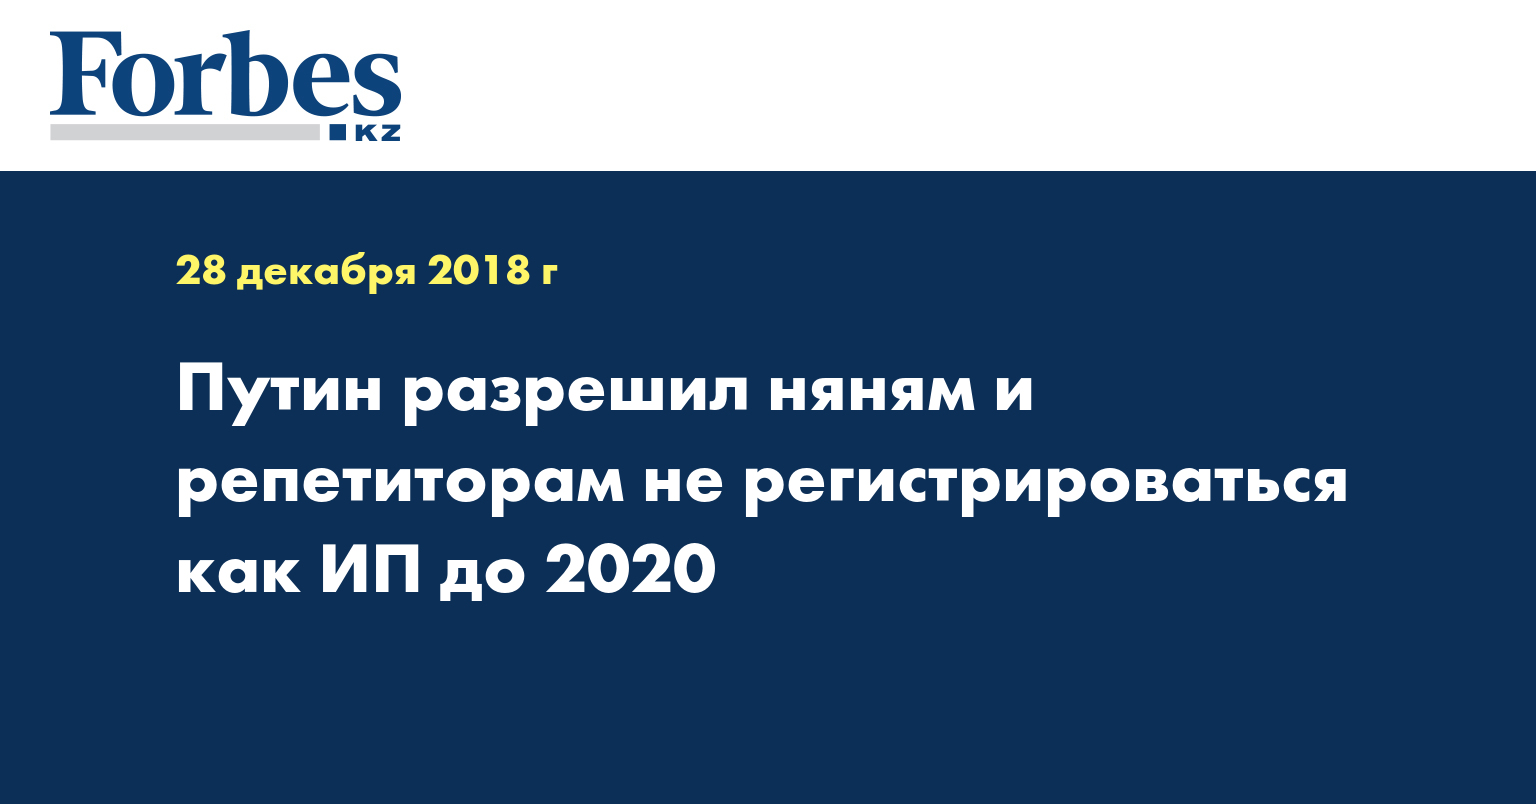 Путин разрешил няням и репетиторам не регистрироваться как ИП до 2020